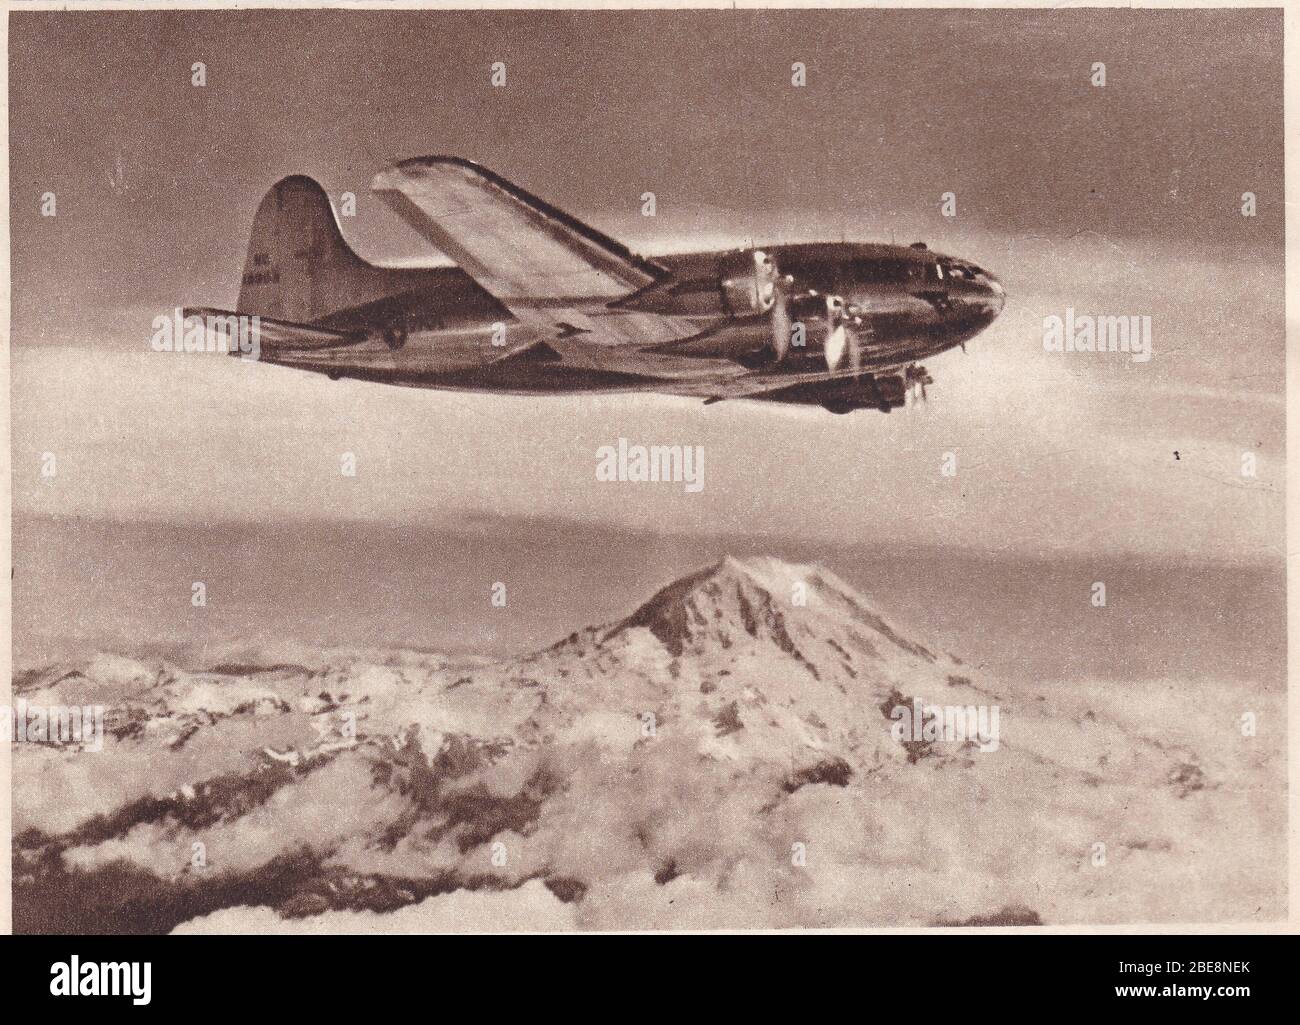 Photo noir et blanc vintage des années 1940 d'un Boeing strato-clipper appartenant à Pan-America Airways qui survole les montagnes Puget Sound. Banque D'Images